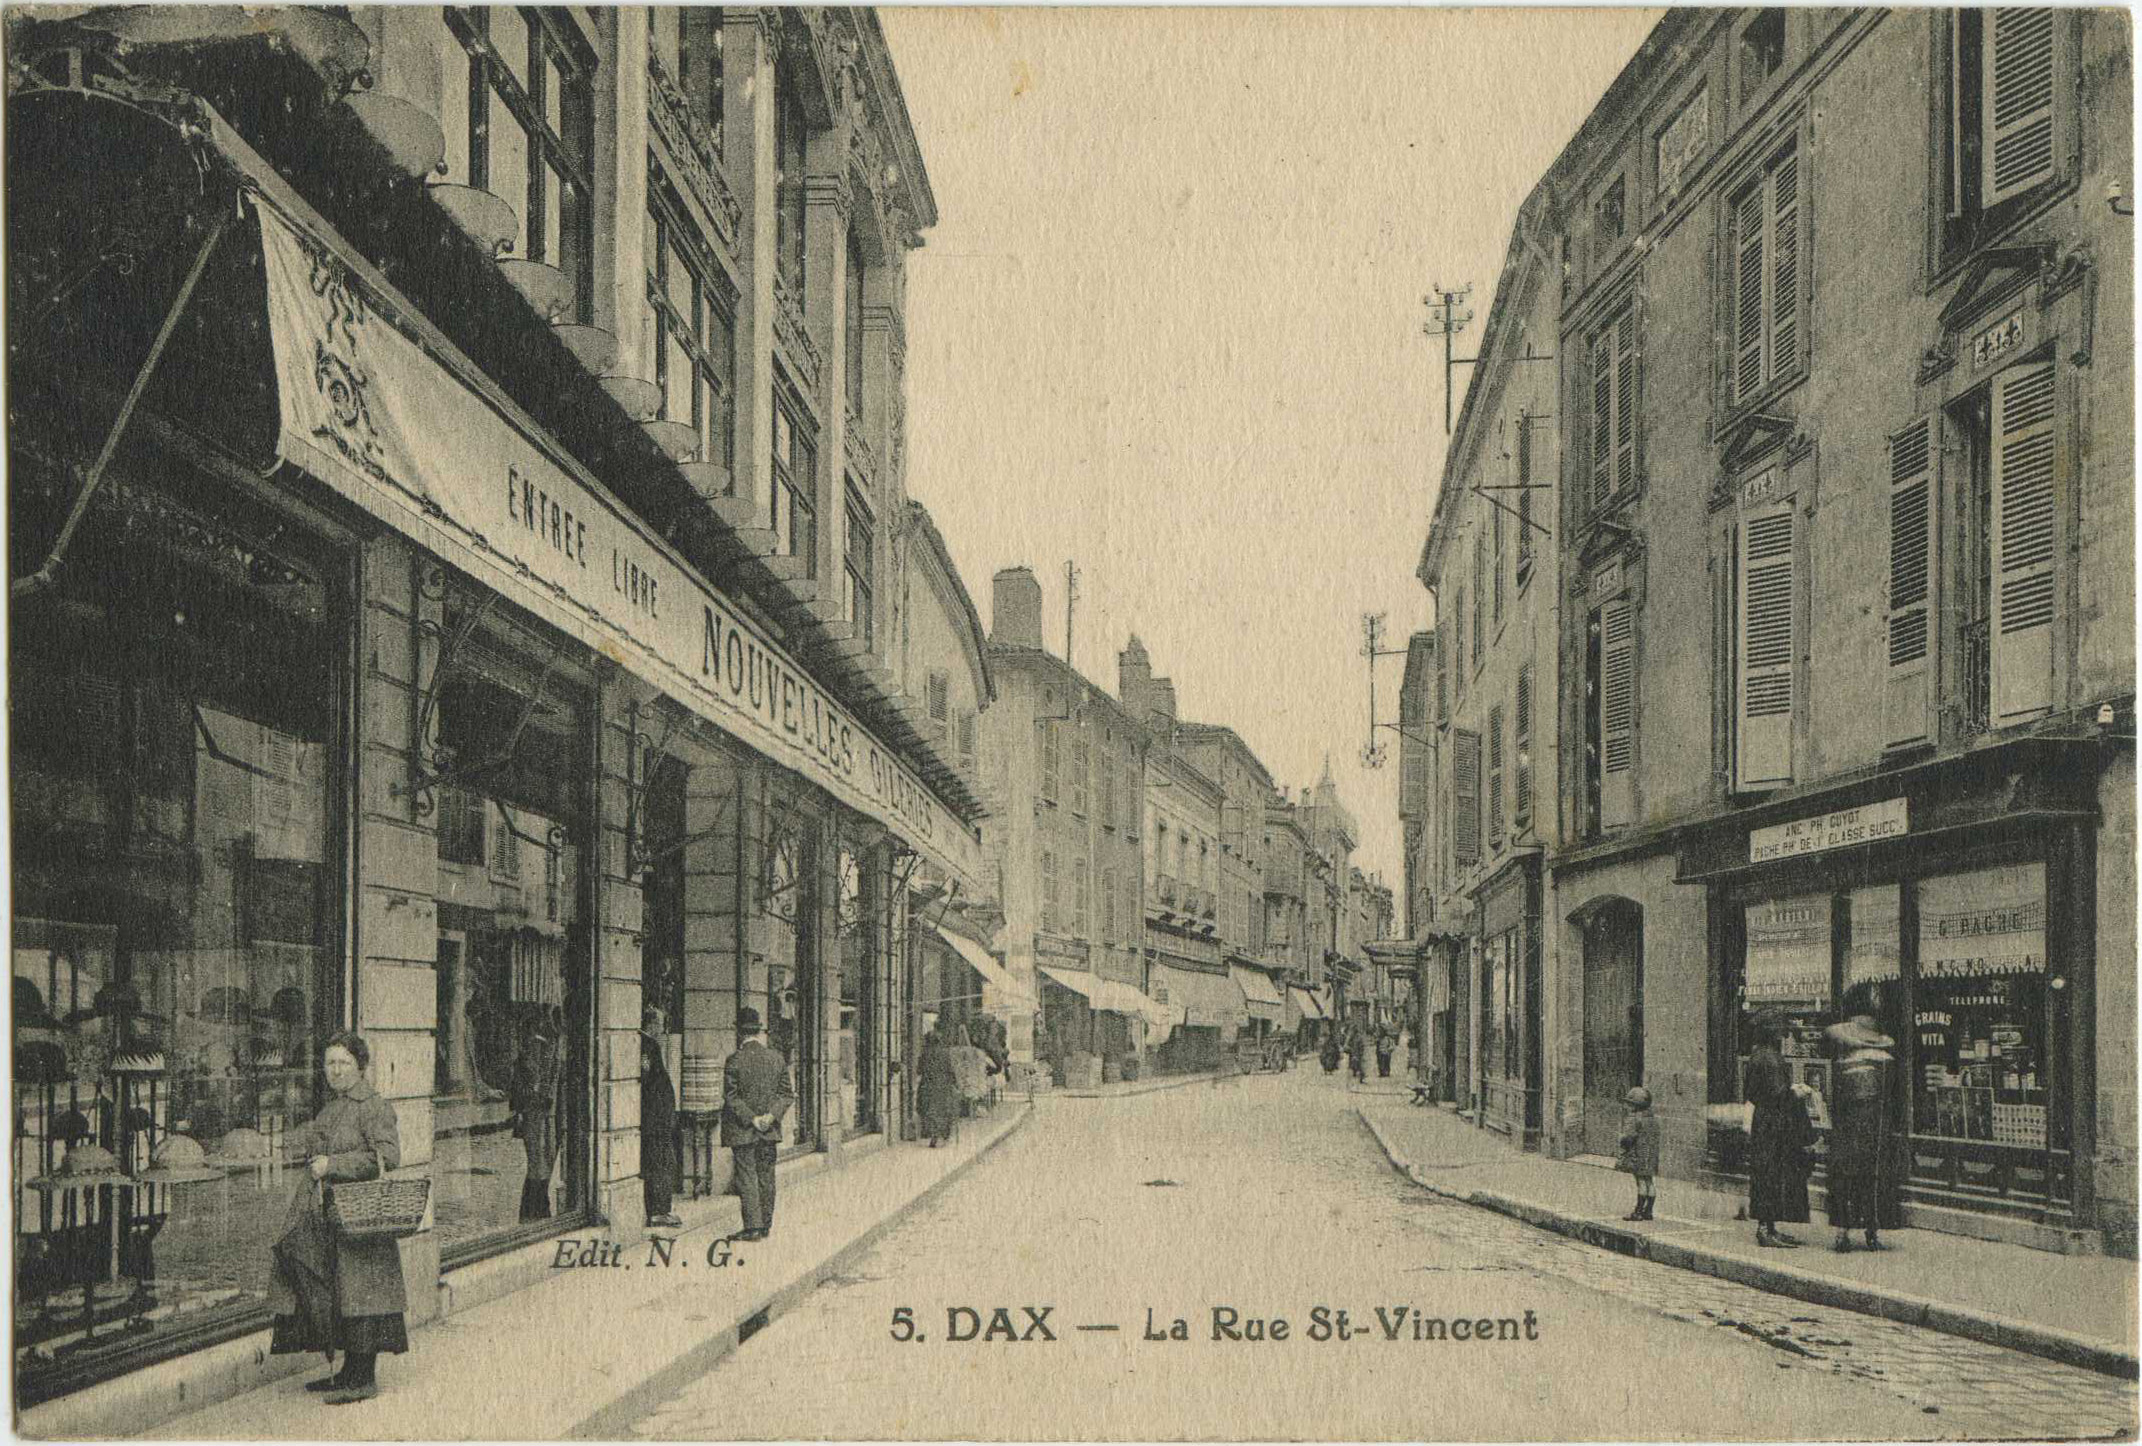 Dax - La Rue St-Vincent